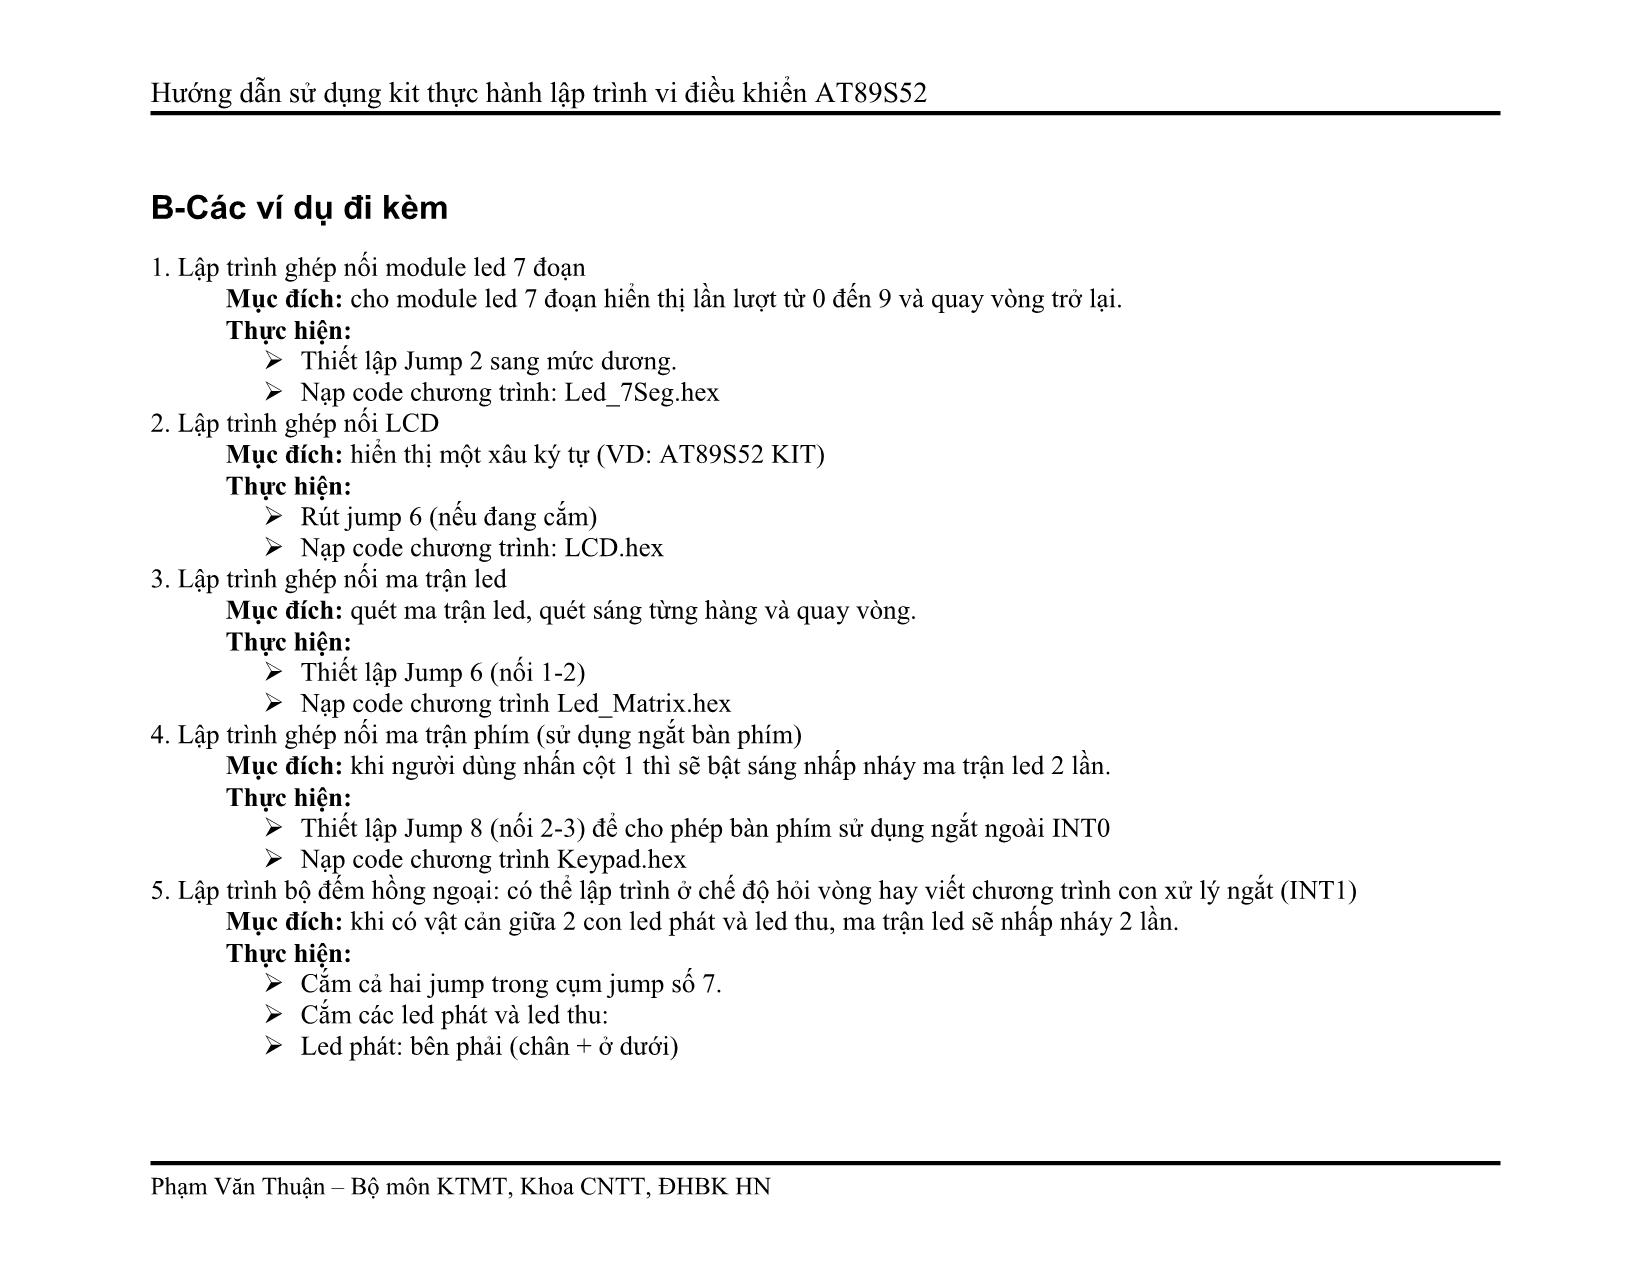 Hướng dẫn sử dụng kit thực hành lập trình vi điều khiển AT89S52 trang 5